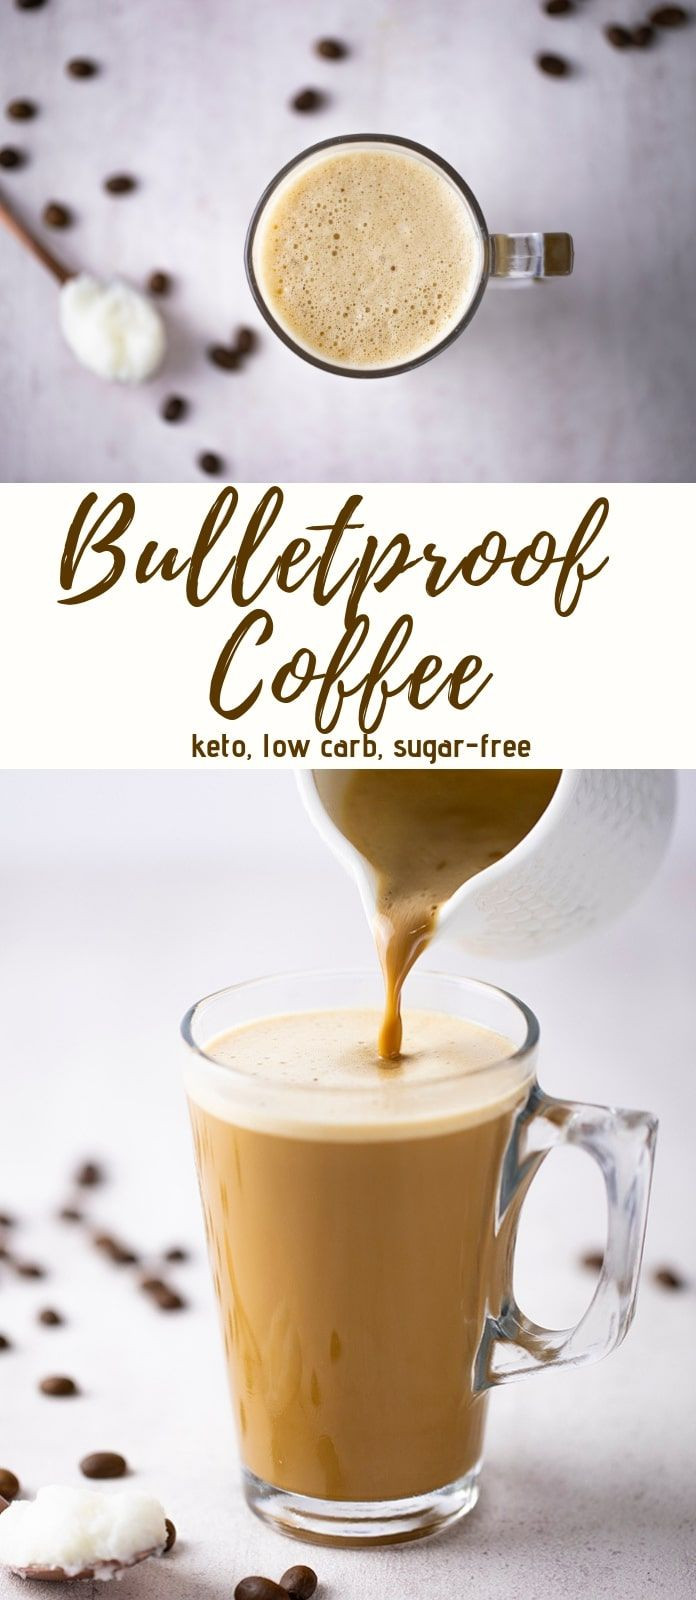 Keto Diet Recipes Breakfast Bulletproof Coffee
 Pin on Diet